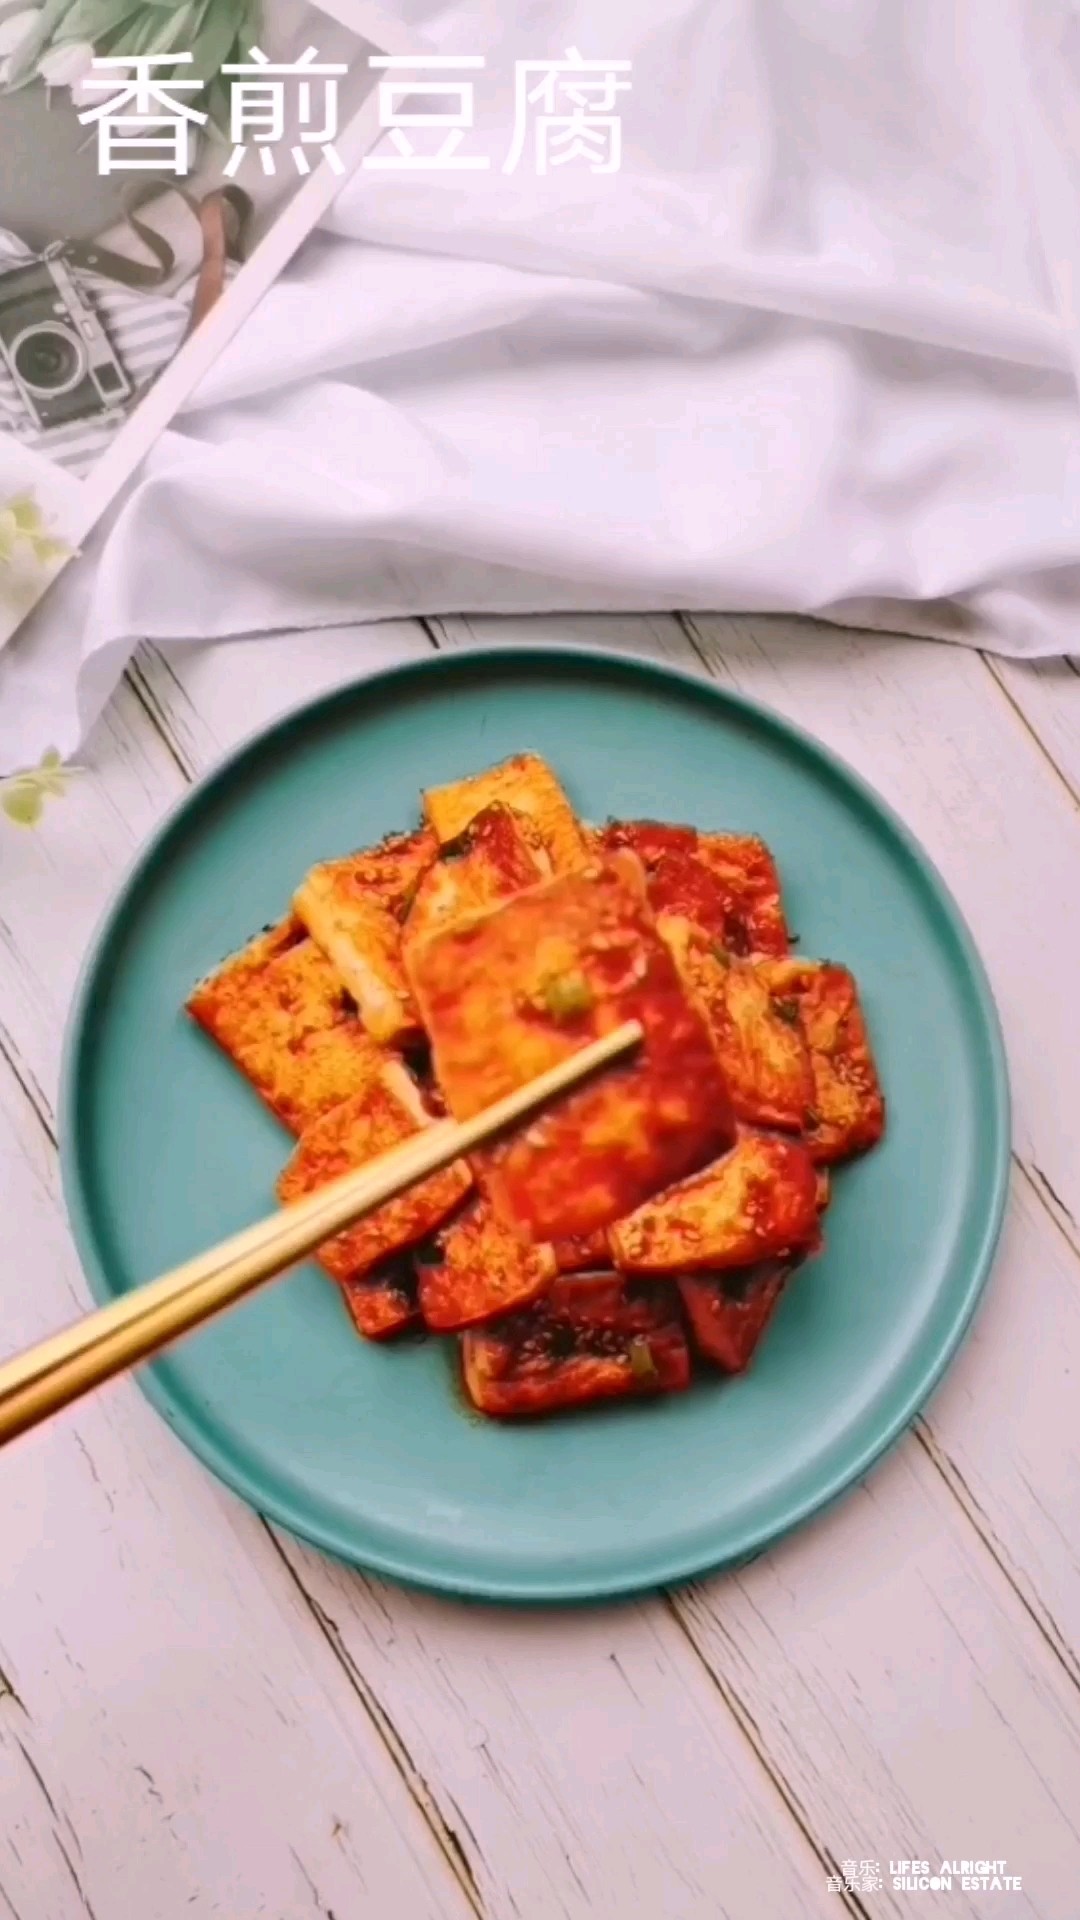 #豆腐的神仙 Practice# Pan-fried Tofu recipe